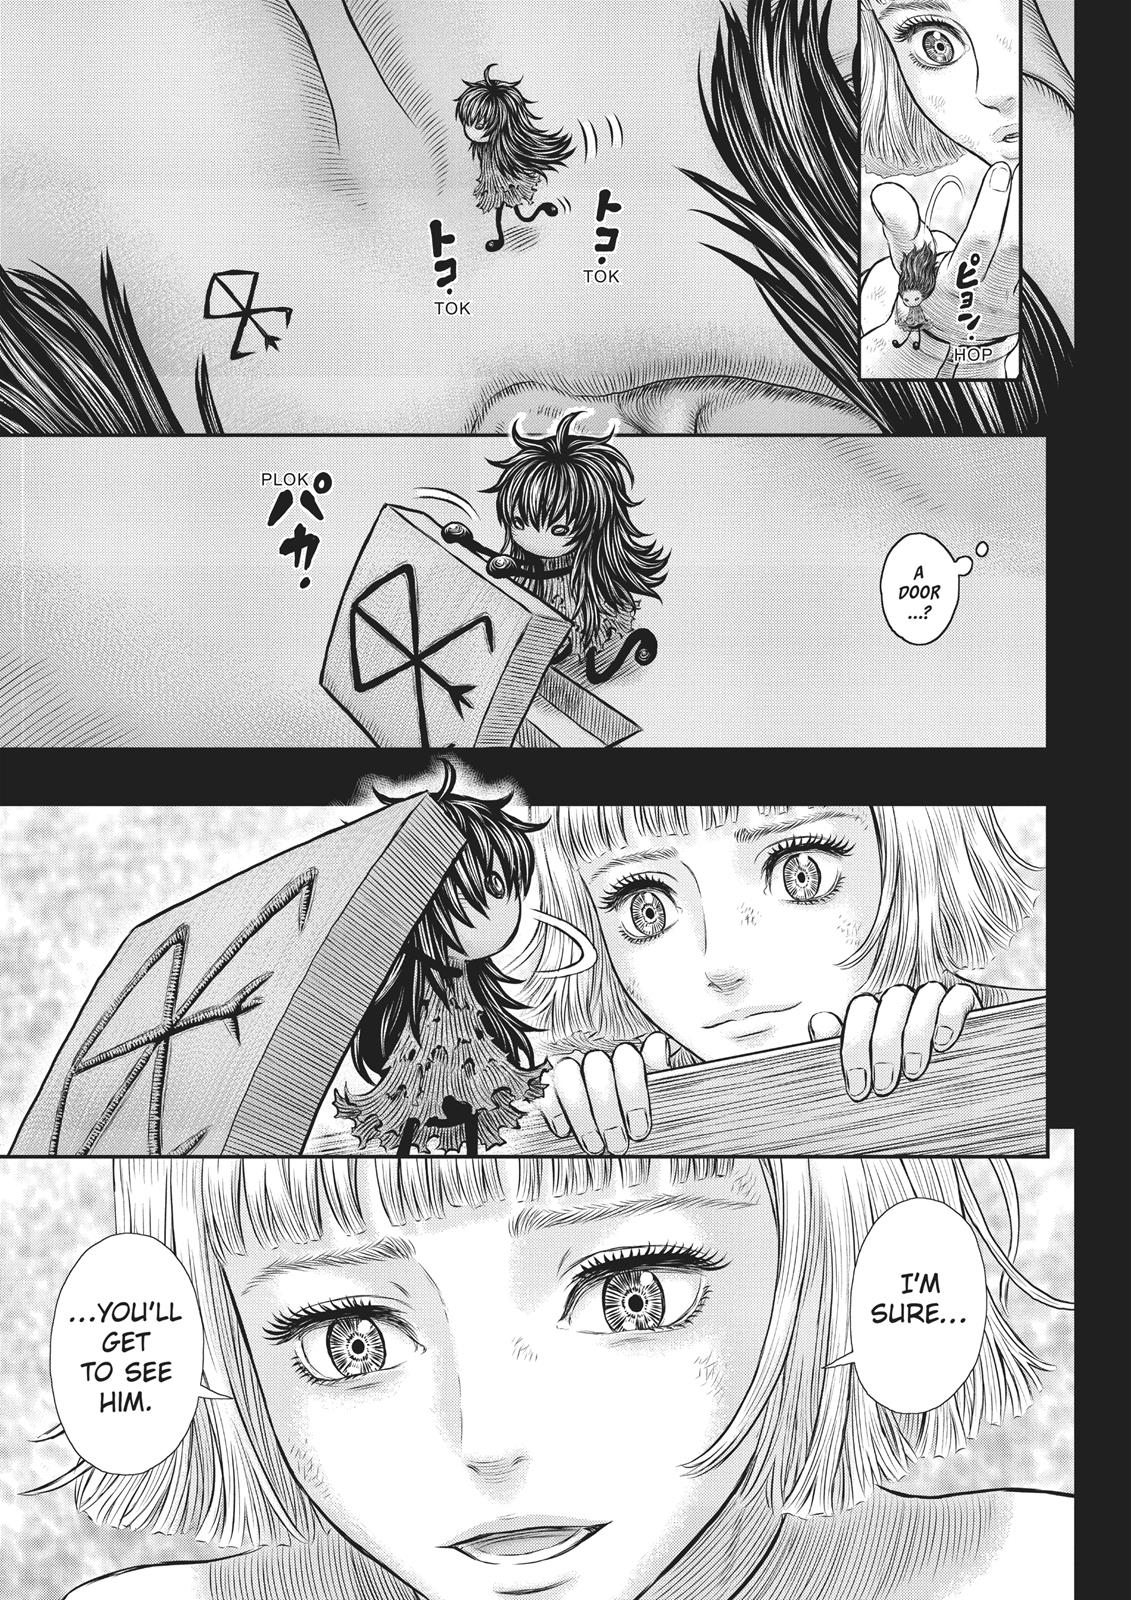 Berserk Manga Chapter 354 image 17